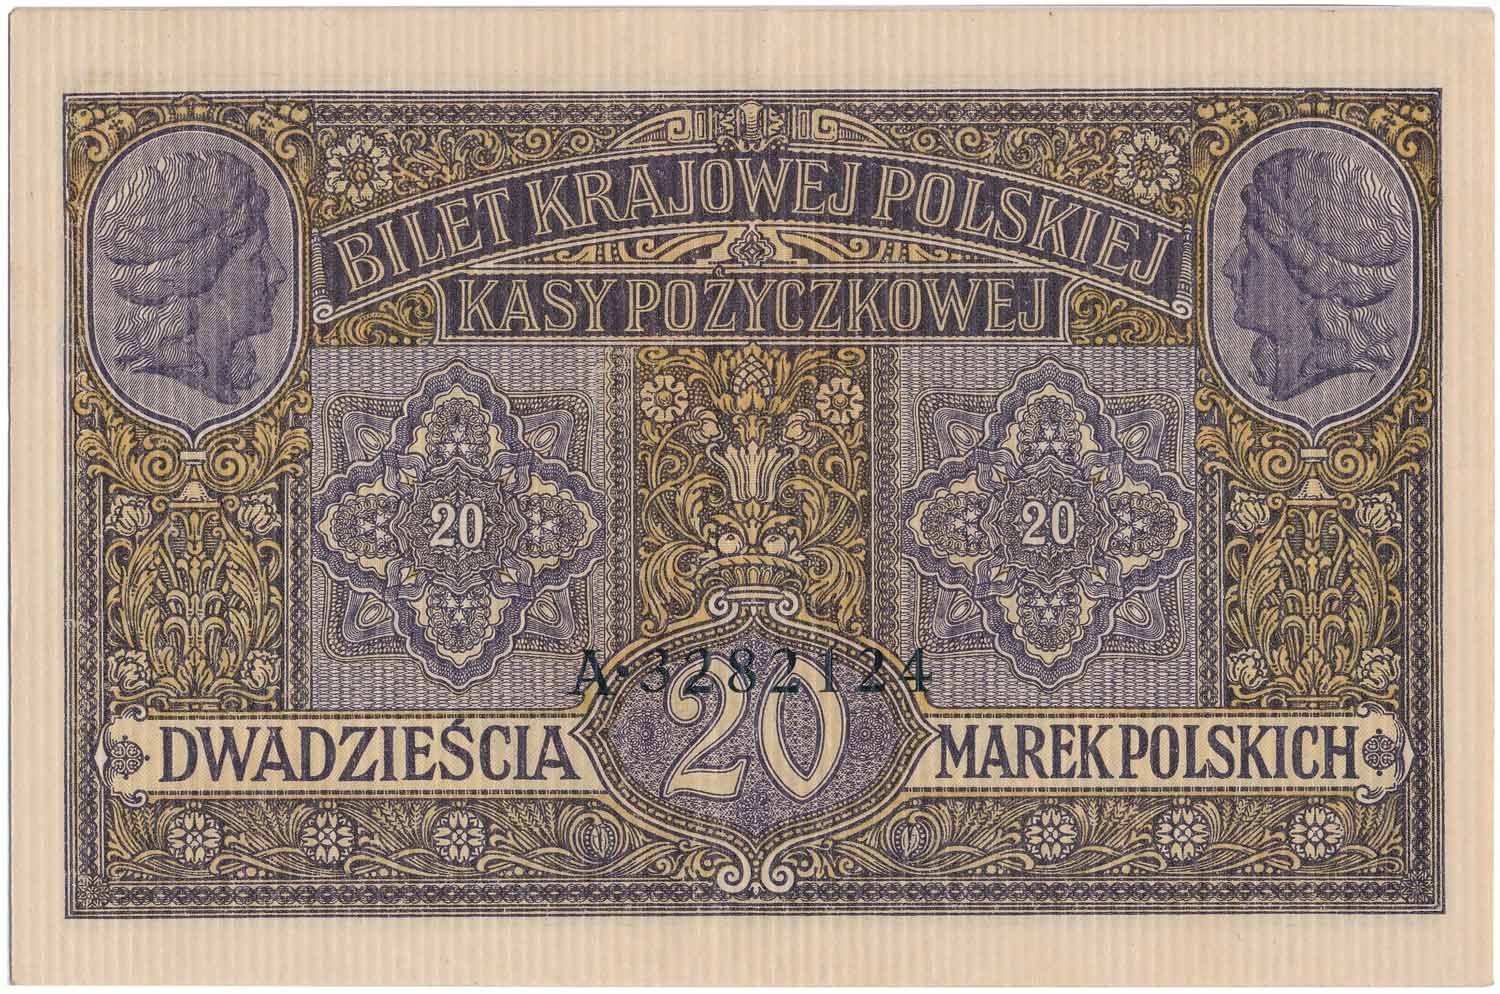 Okupacja niemiecka 1915-1918. Banknot. 20 marek polskich 1916 ...jenerał... PMG 58 EPQ